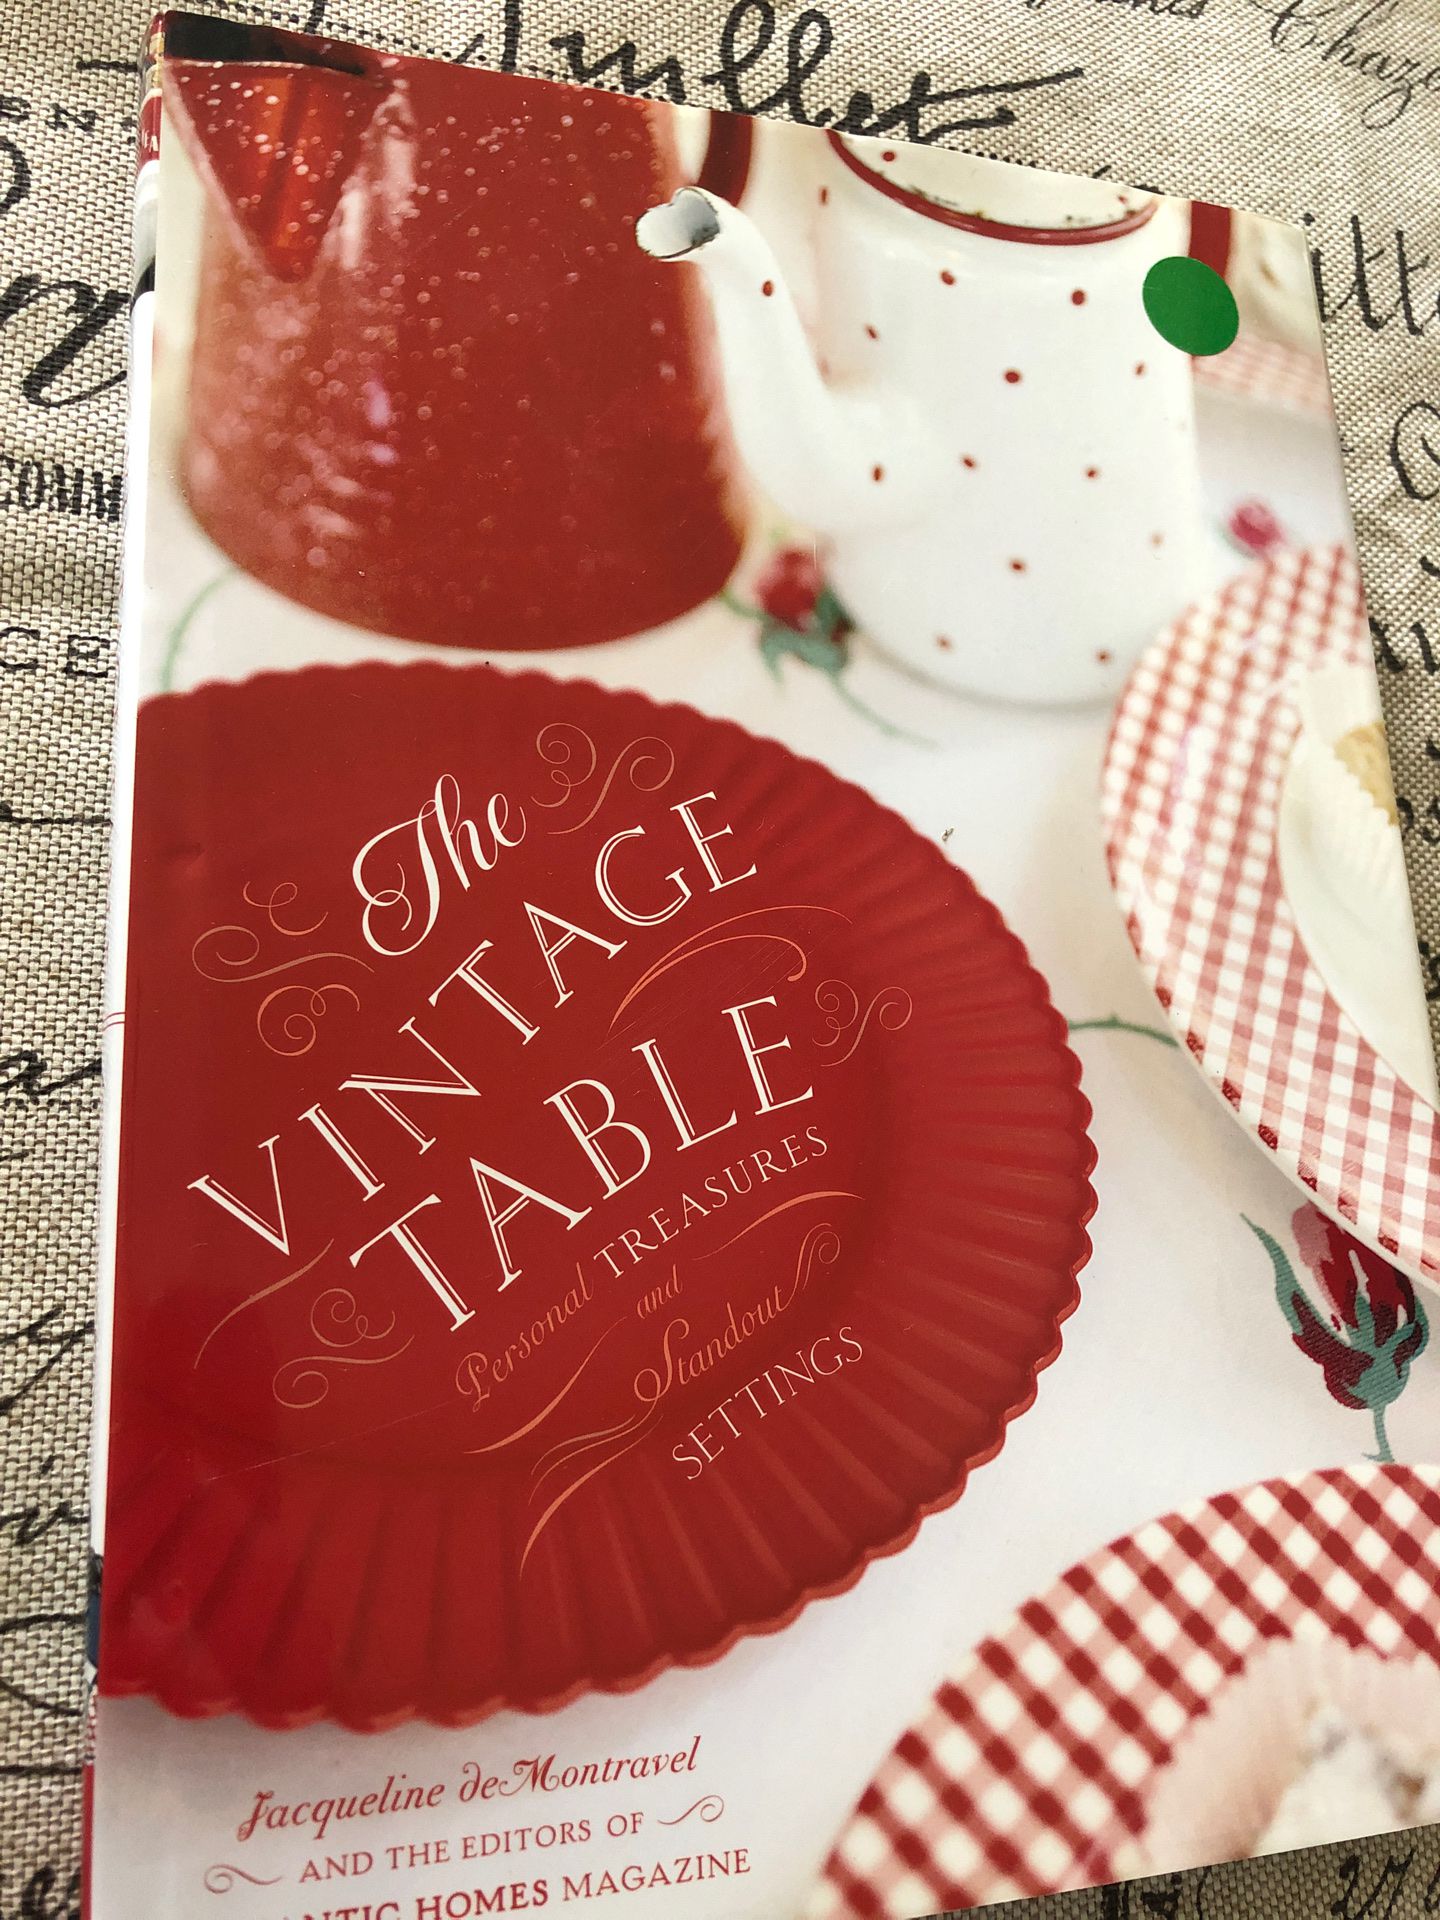 New book The Vintage Table - farmhouse, shabby chic, decor